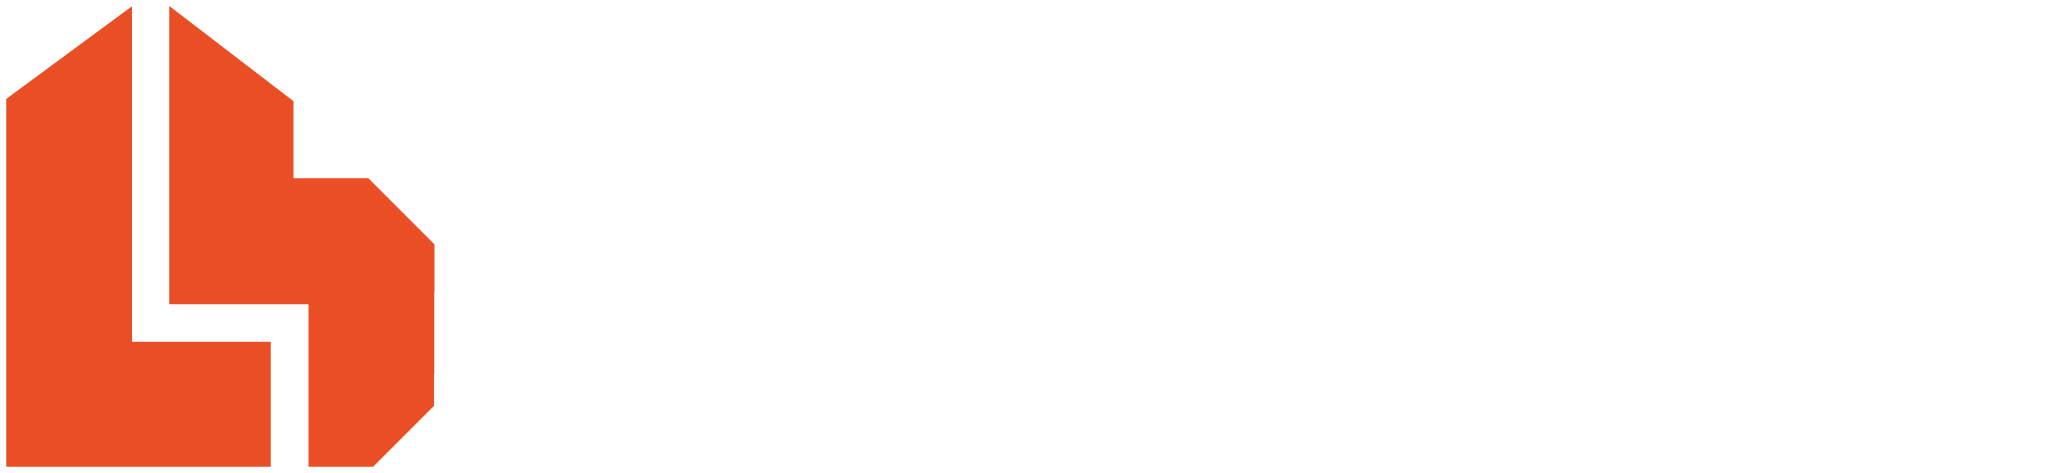 L.brador logo